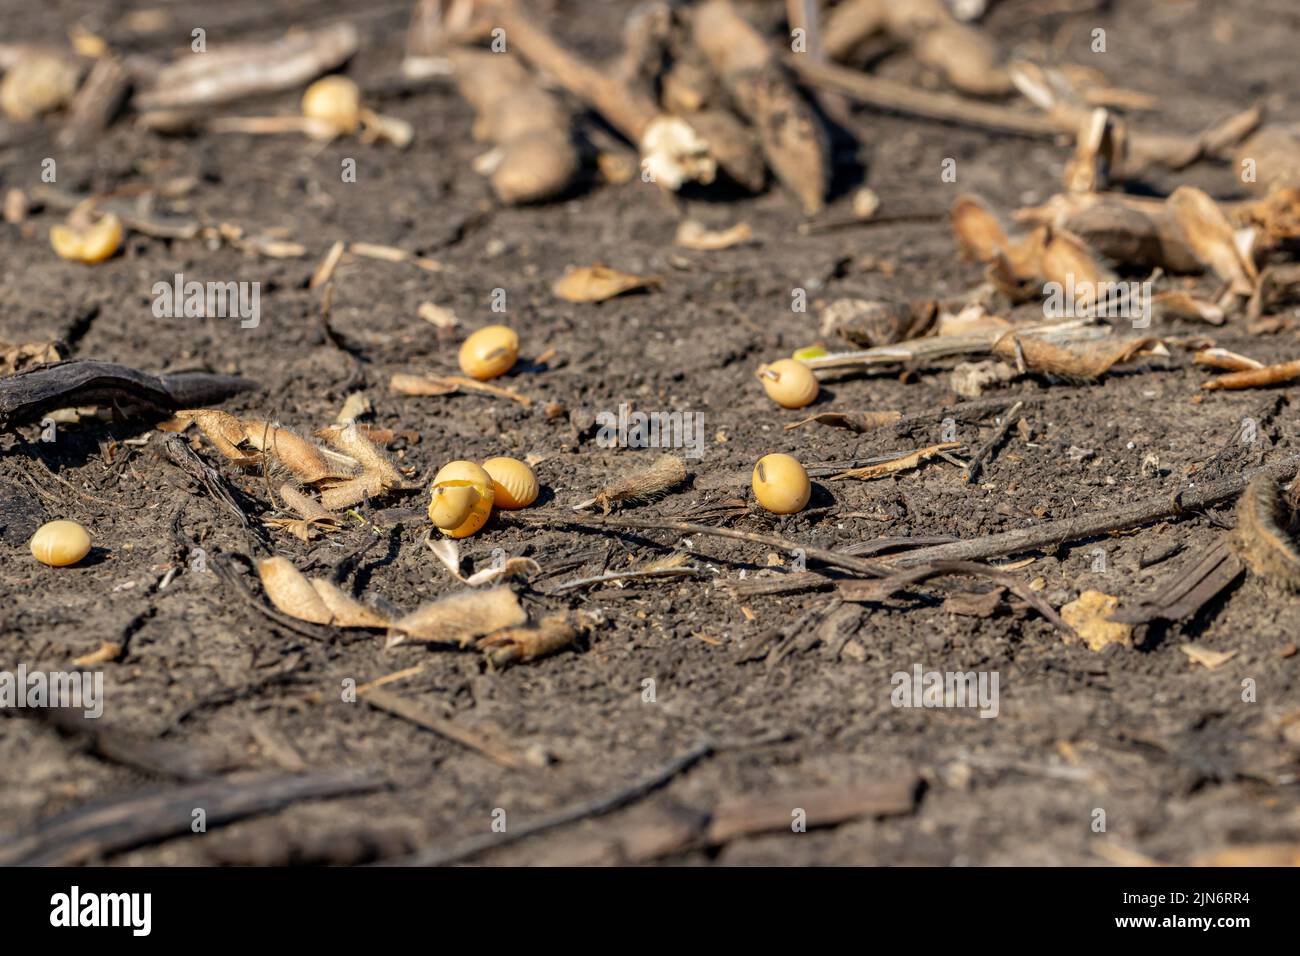 Le soja est tombé dans le champ récolté. Notion de perte, de rendement et d'agriculture de graines de soja Banque D'Images